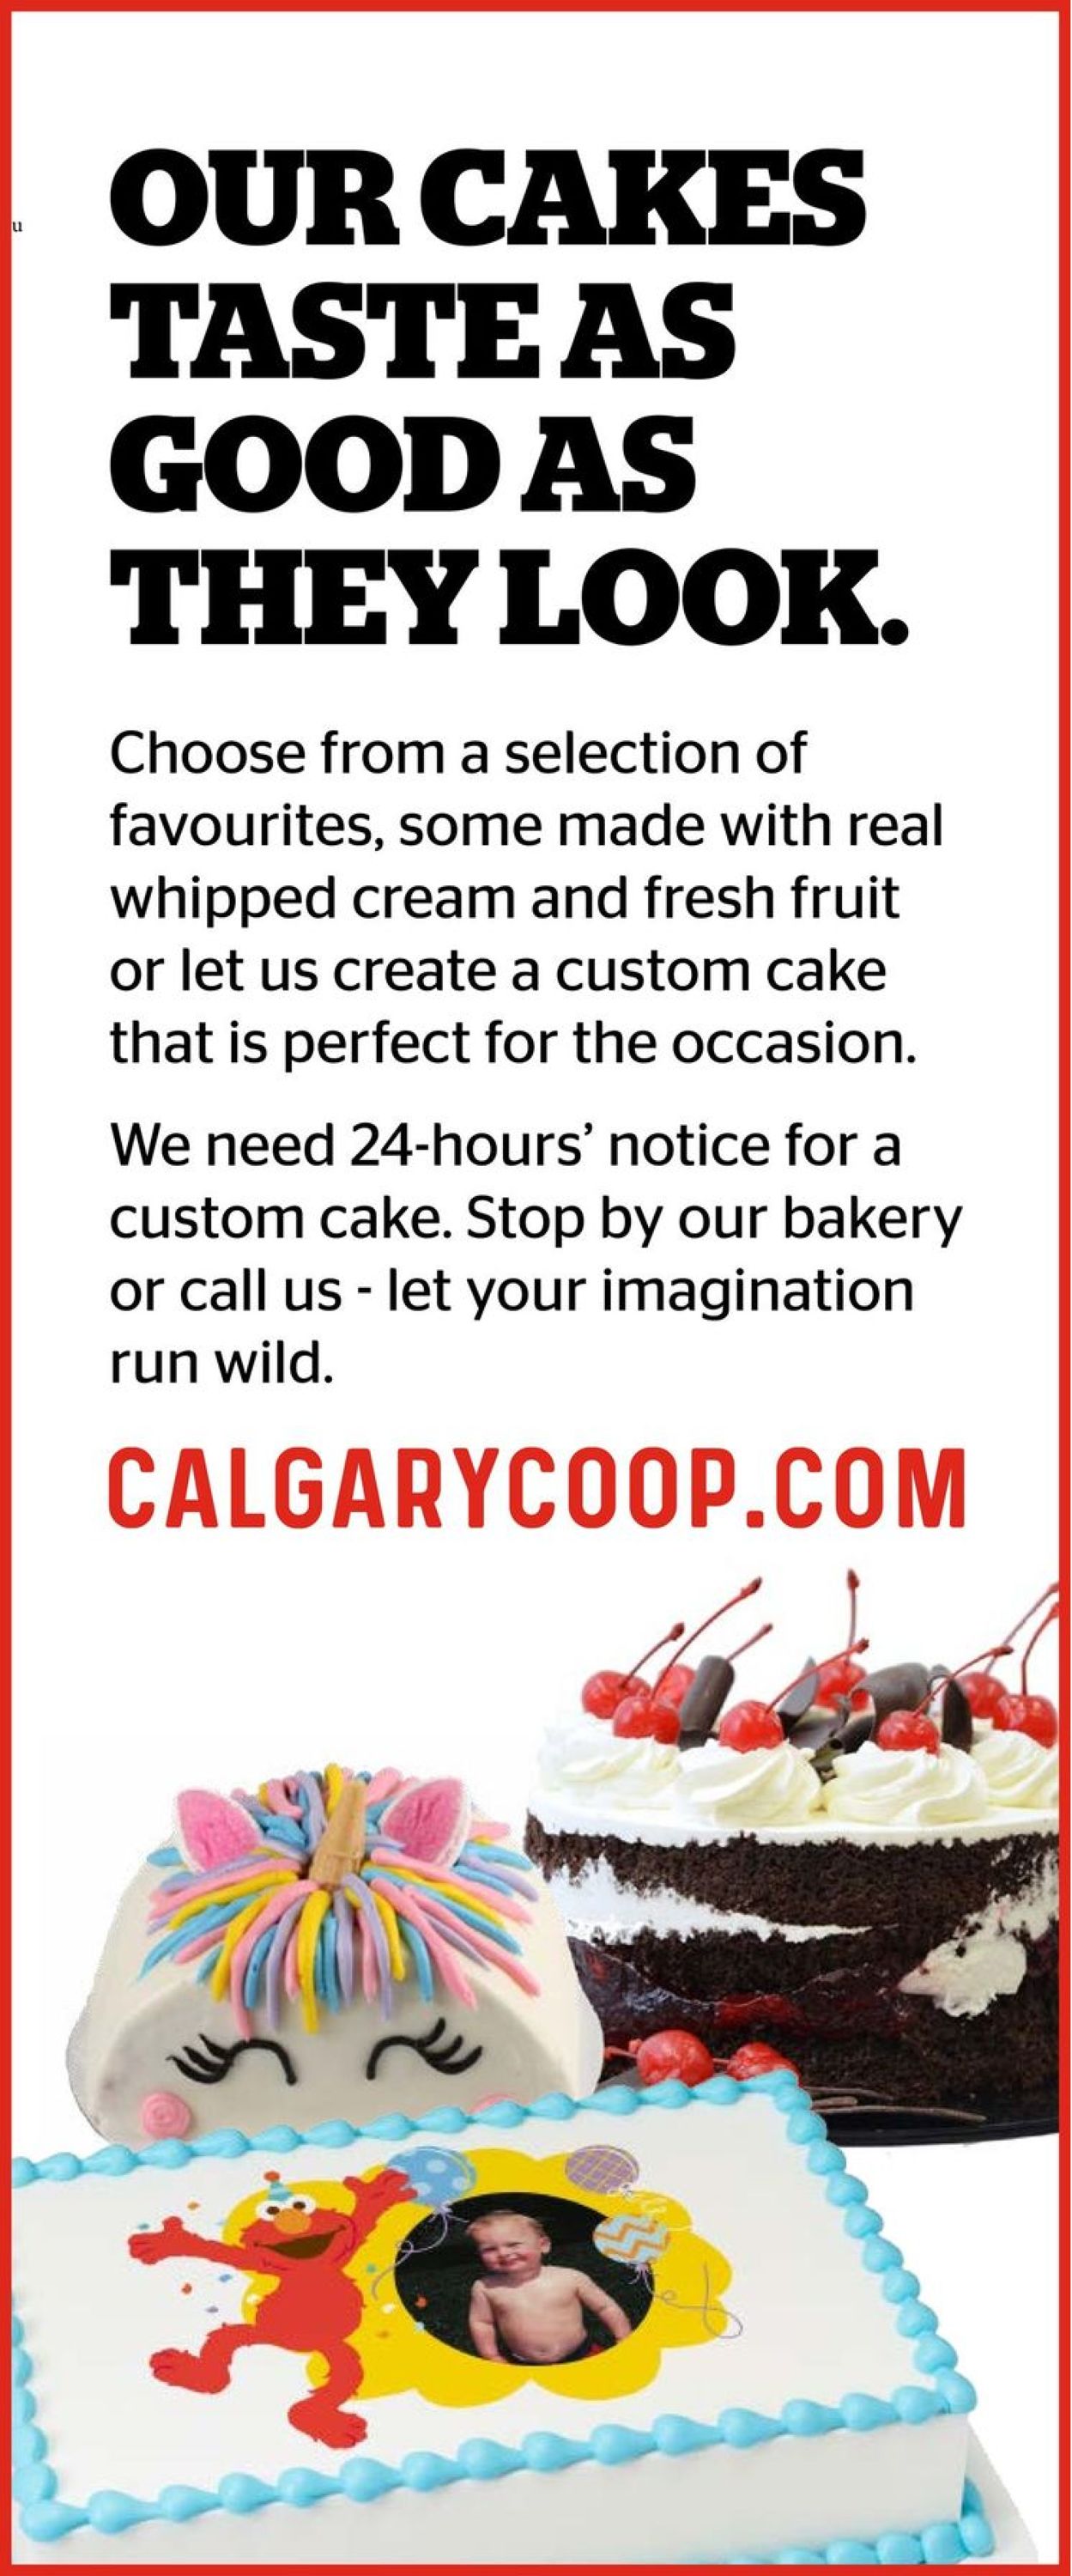 Calgary Co-op Flyer from 02/10/2022